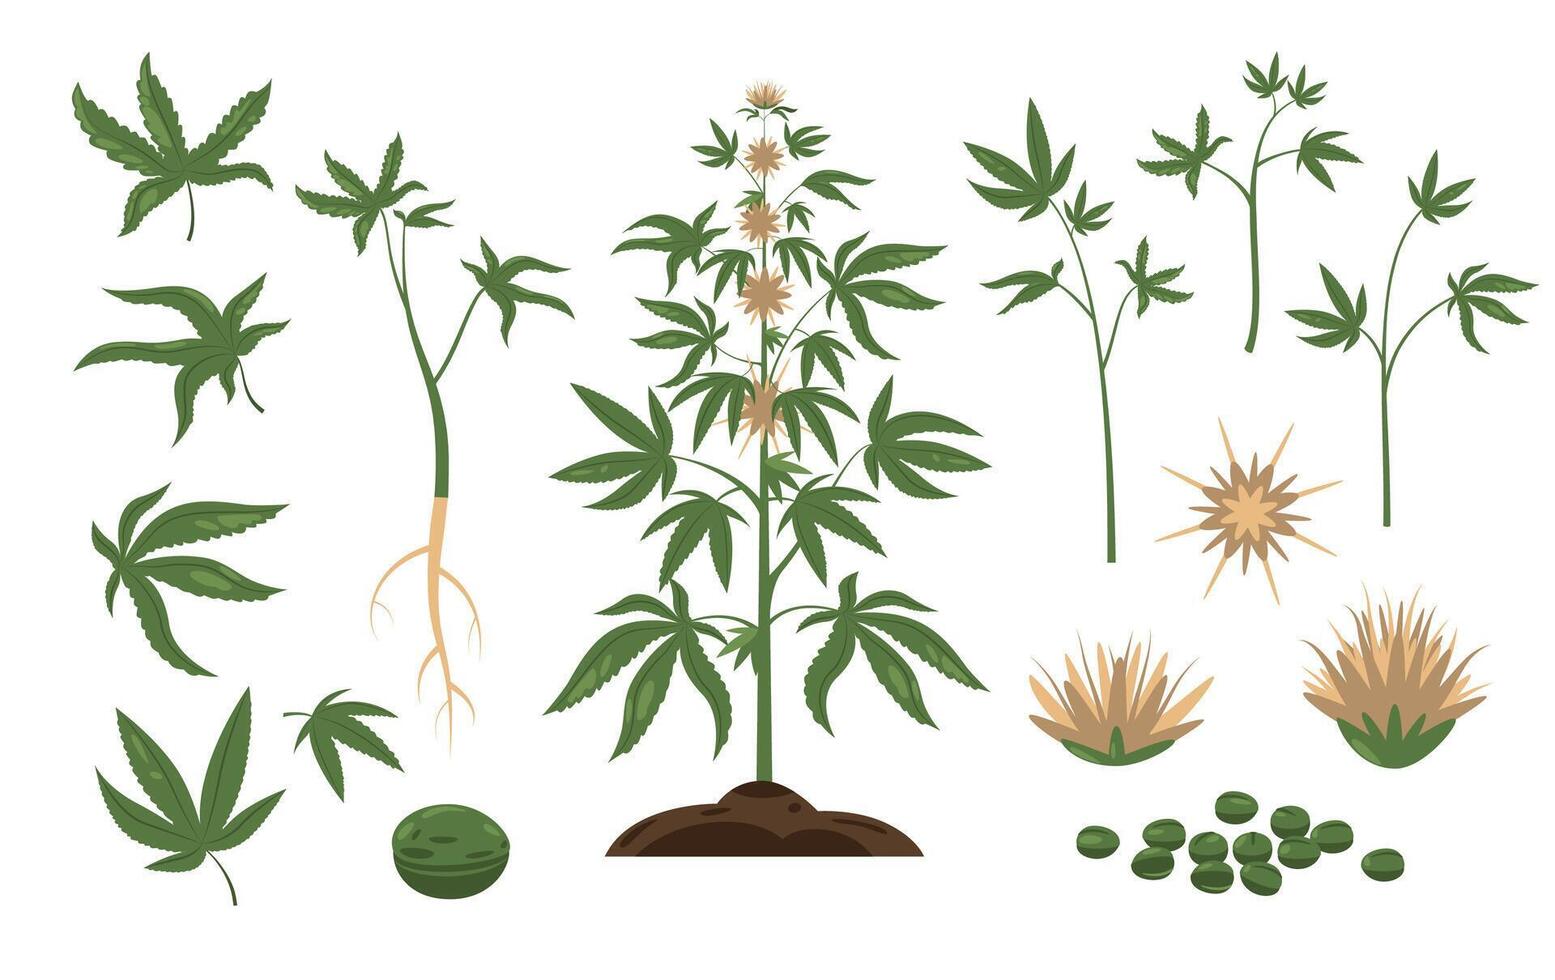 canabis planta. verde hierba hoja y planta semillas, dibujos animados haz de marijuana brotes inflorescencias, salvaje cáñamo follaje plano estilo. vector aislado conjunto